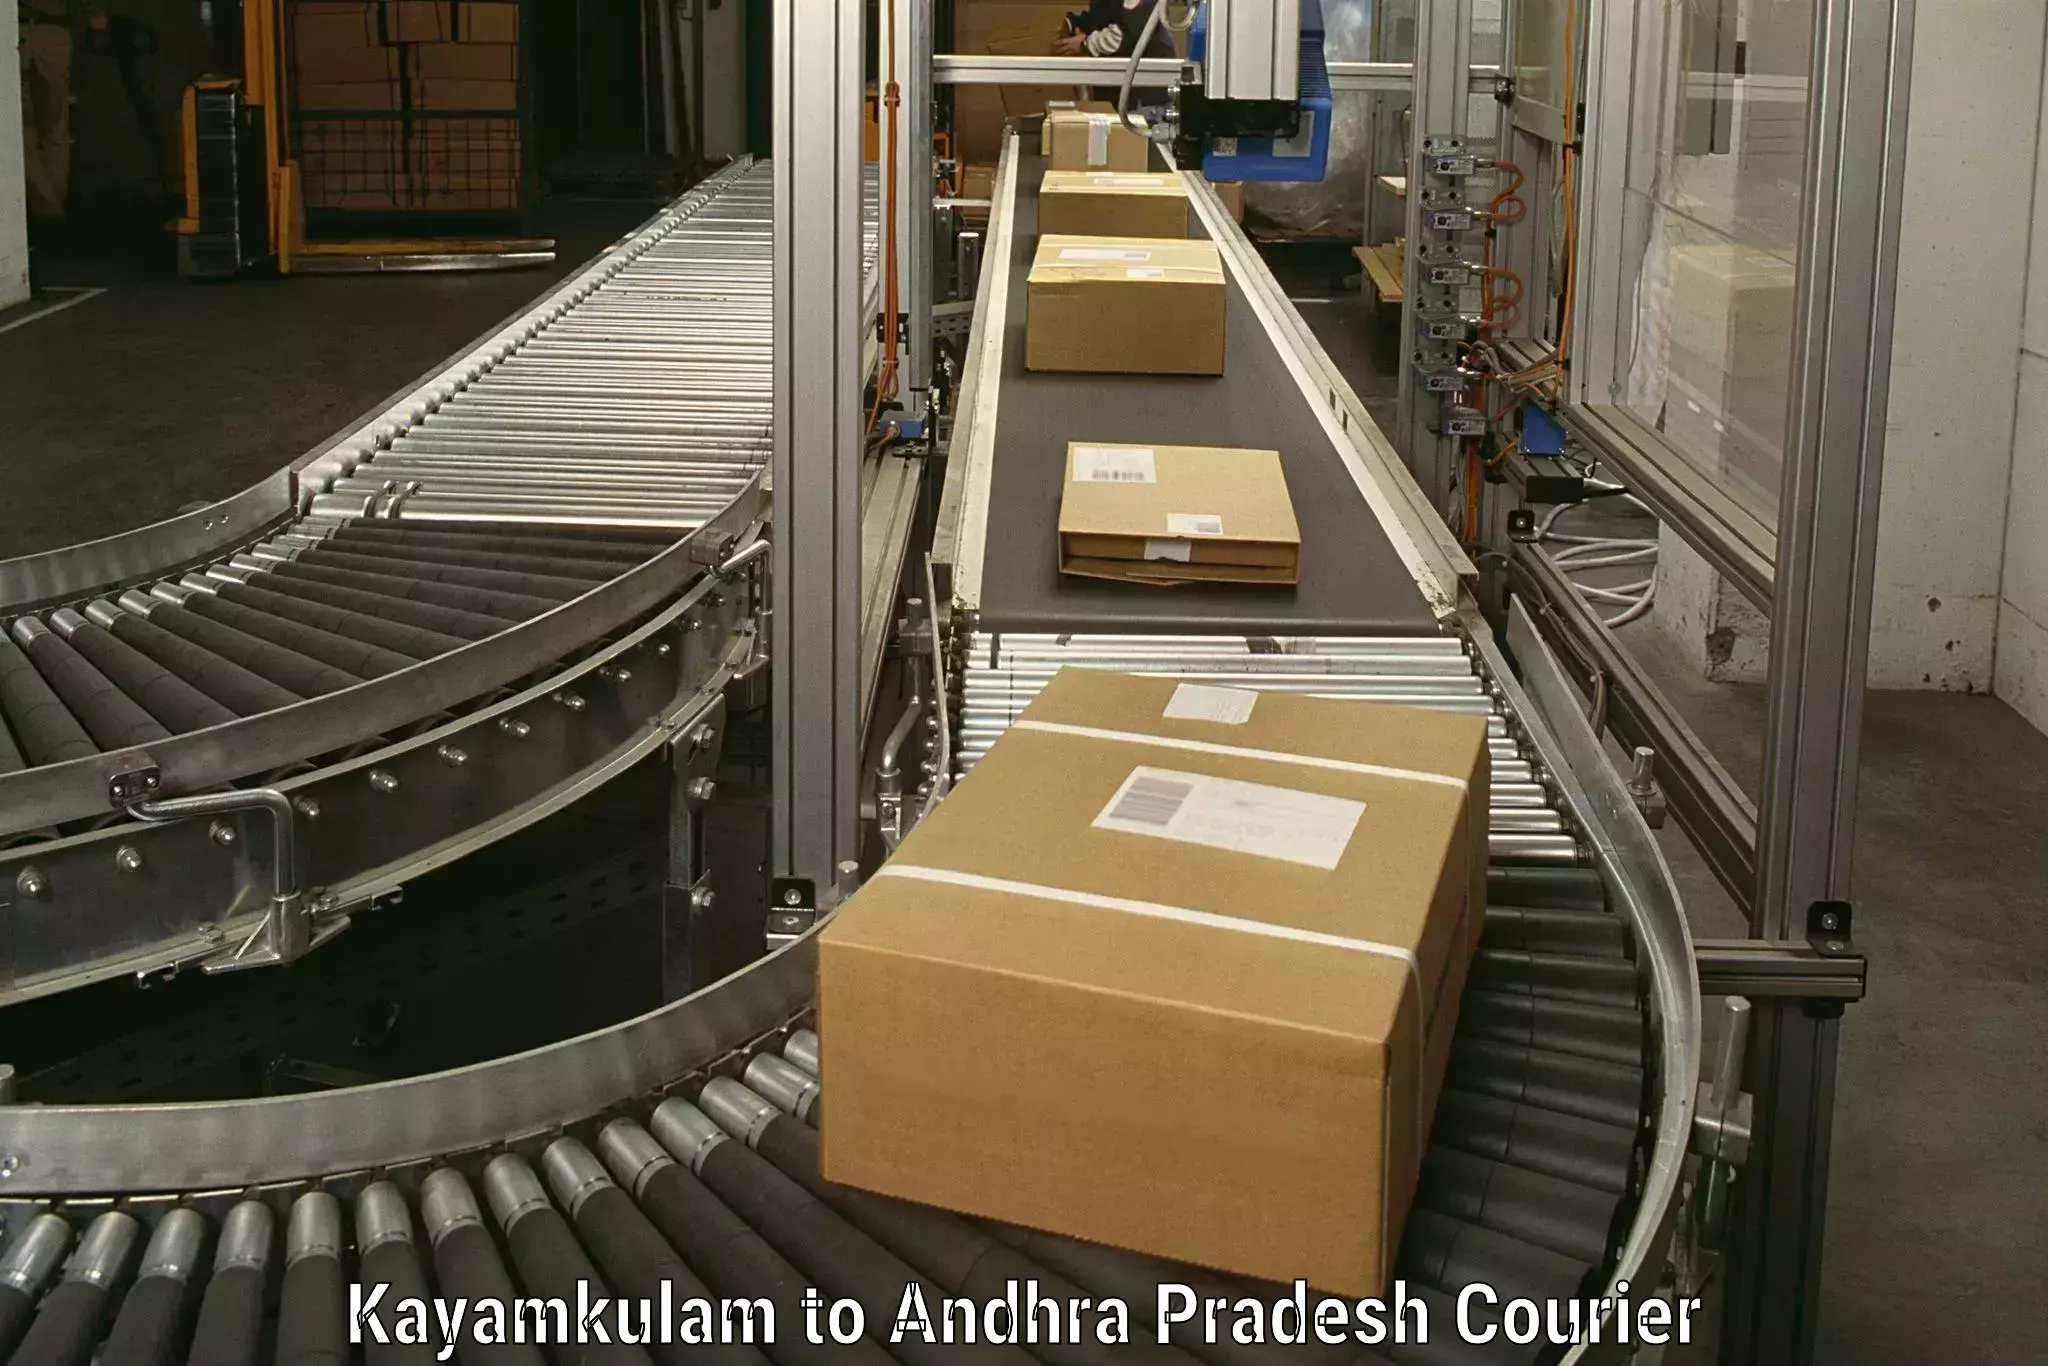 Trusted moving company Kayamkulam to Yerragondapalem